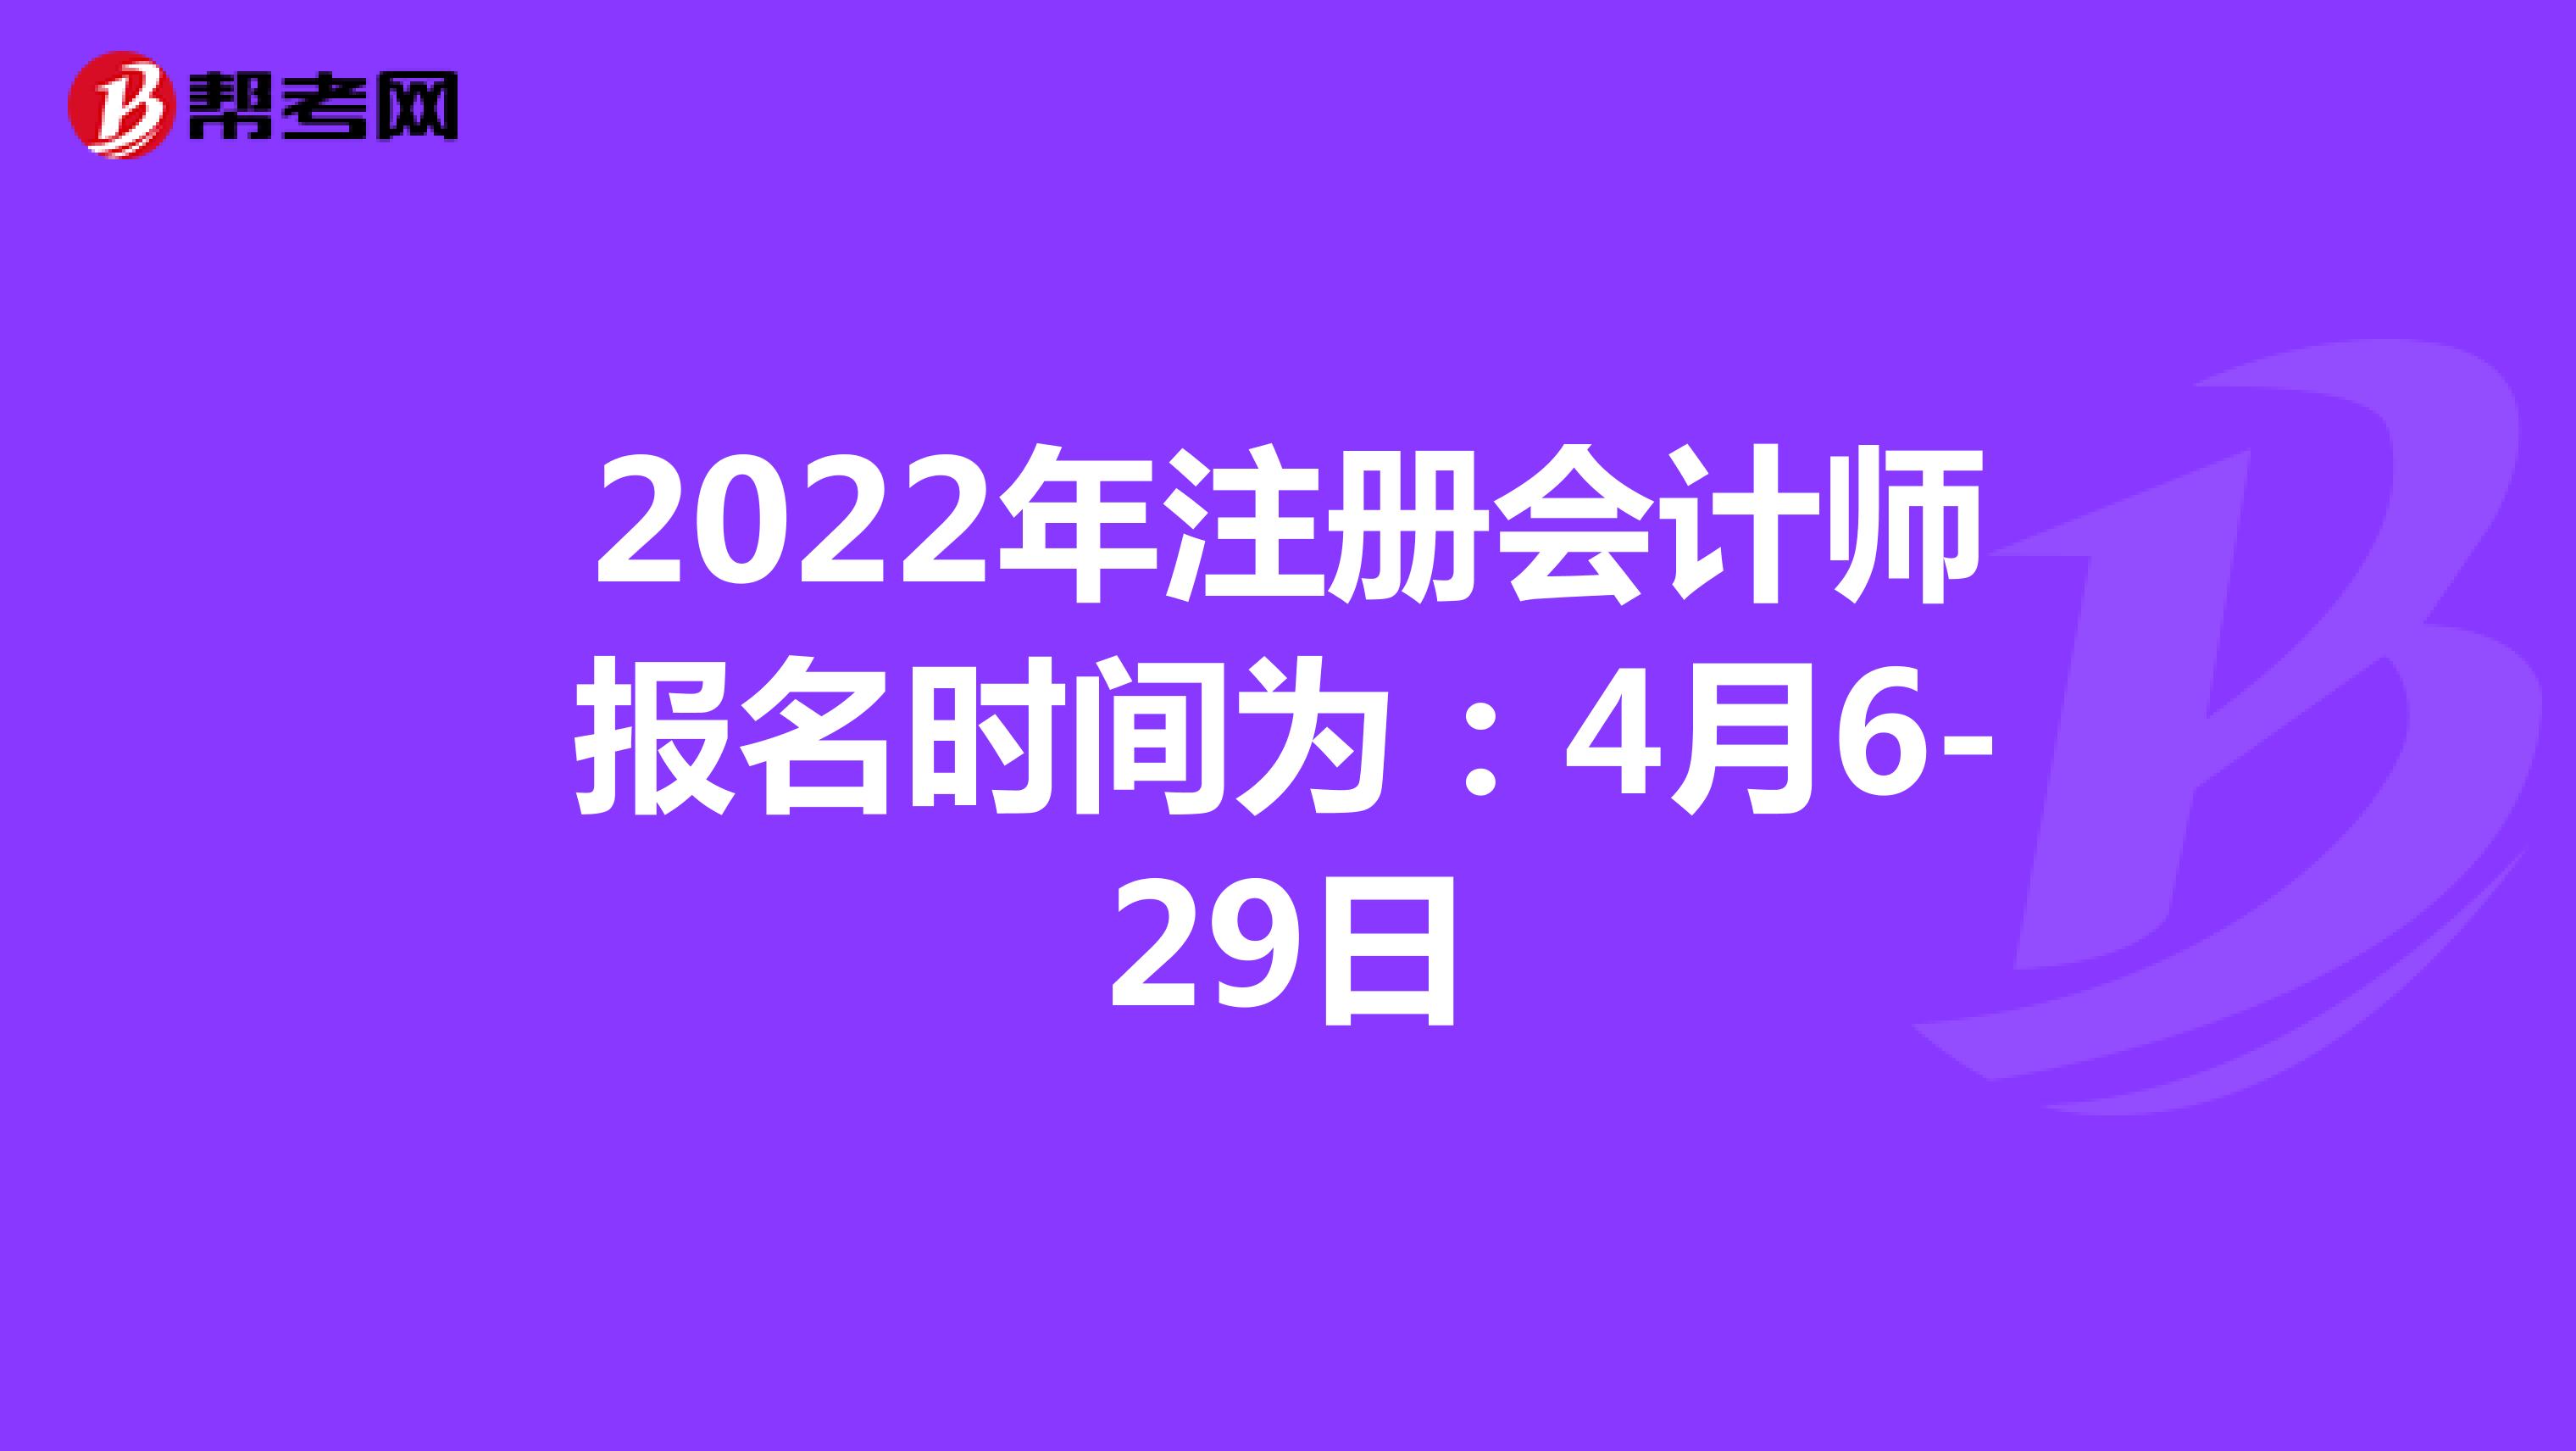 2022年注册会计师报名时间为：4月6-29日